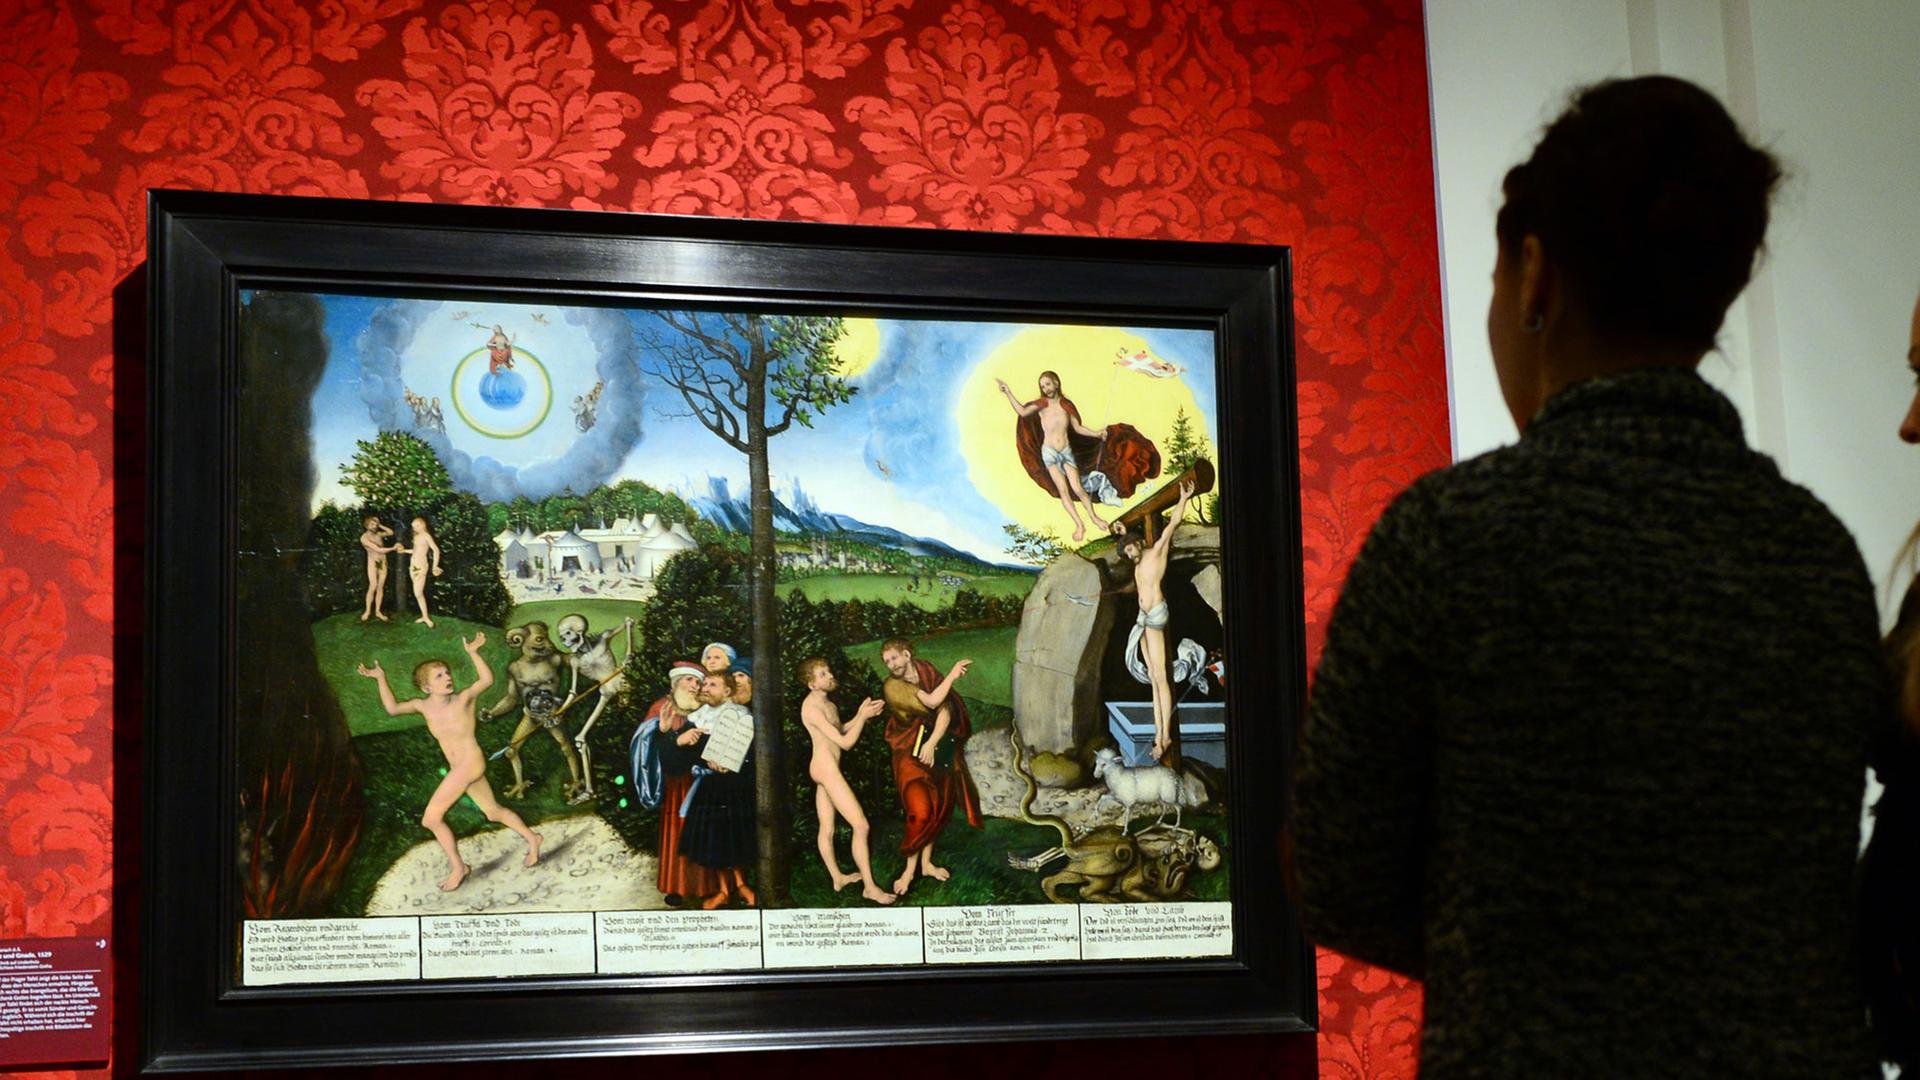 In der Ausstellung "Bild und Botschaft. Cranach im Dienst von Hof und Reformation" betrachten zwei junge Frauen am 26.03.2015 im Herzoglichen Museum in Gotha (Thüringen) das Gemälde "Gesetz und Gnade" von Lucas Cranach d.Ä., gemalt 1529.